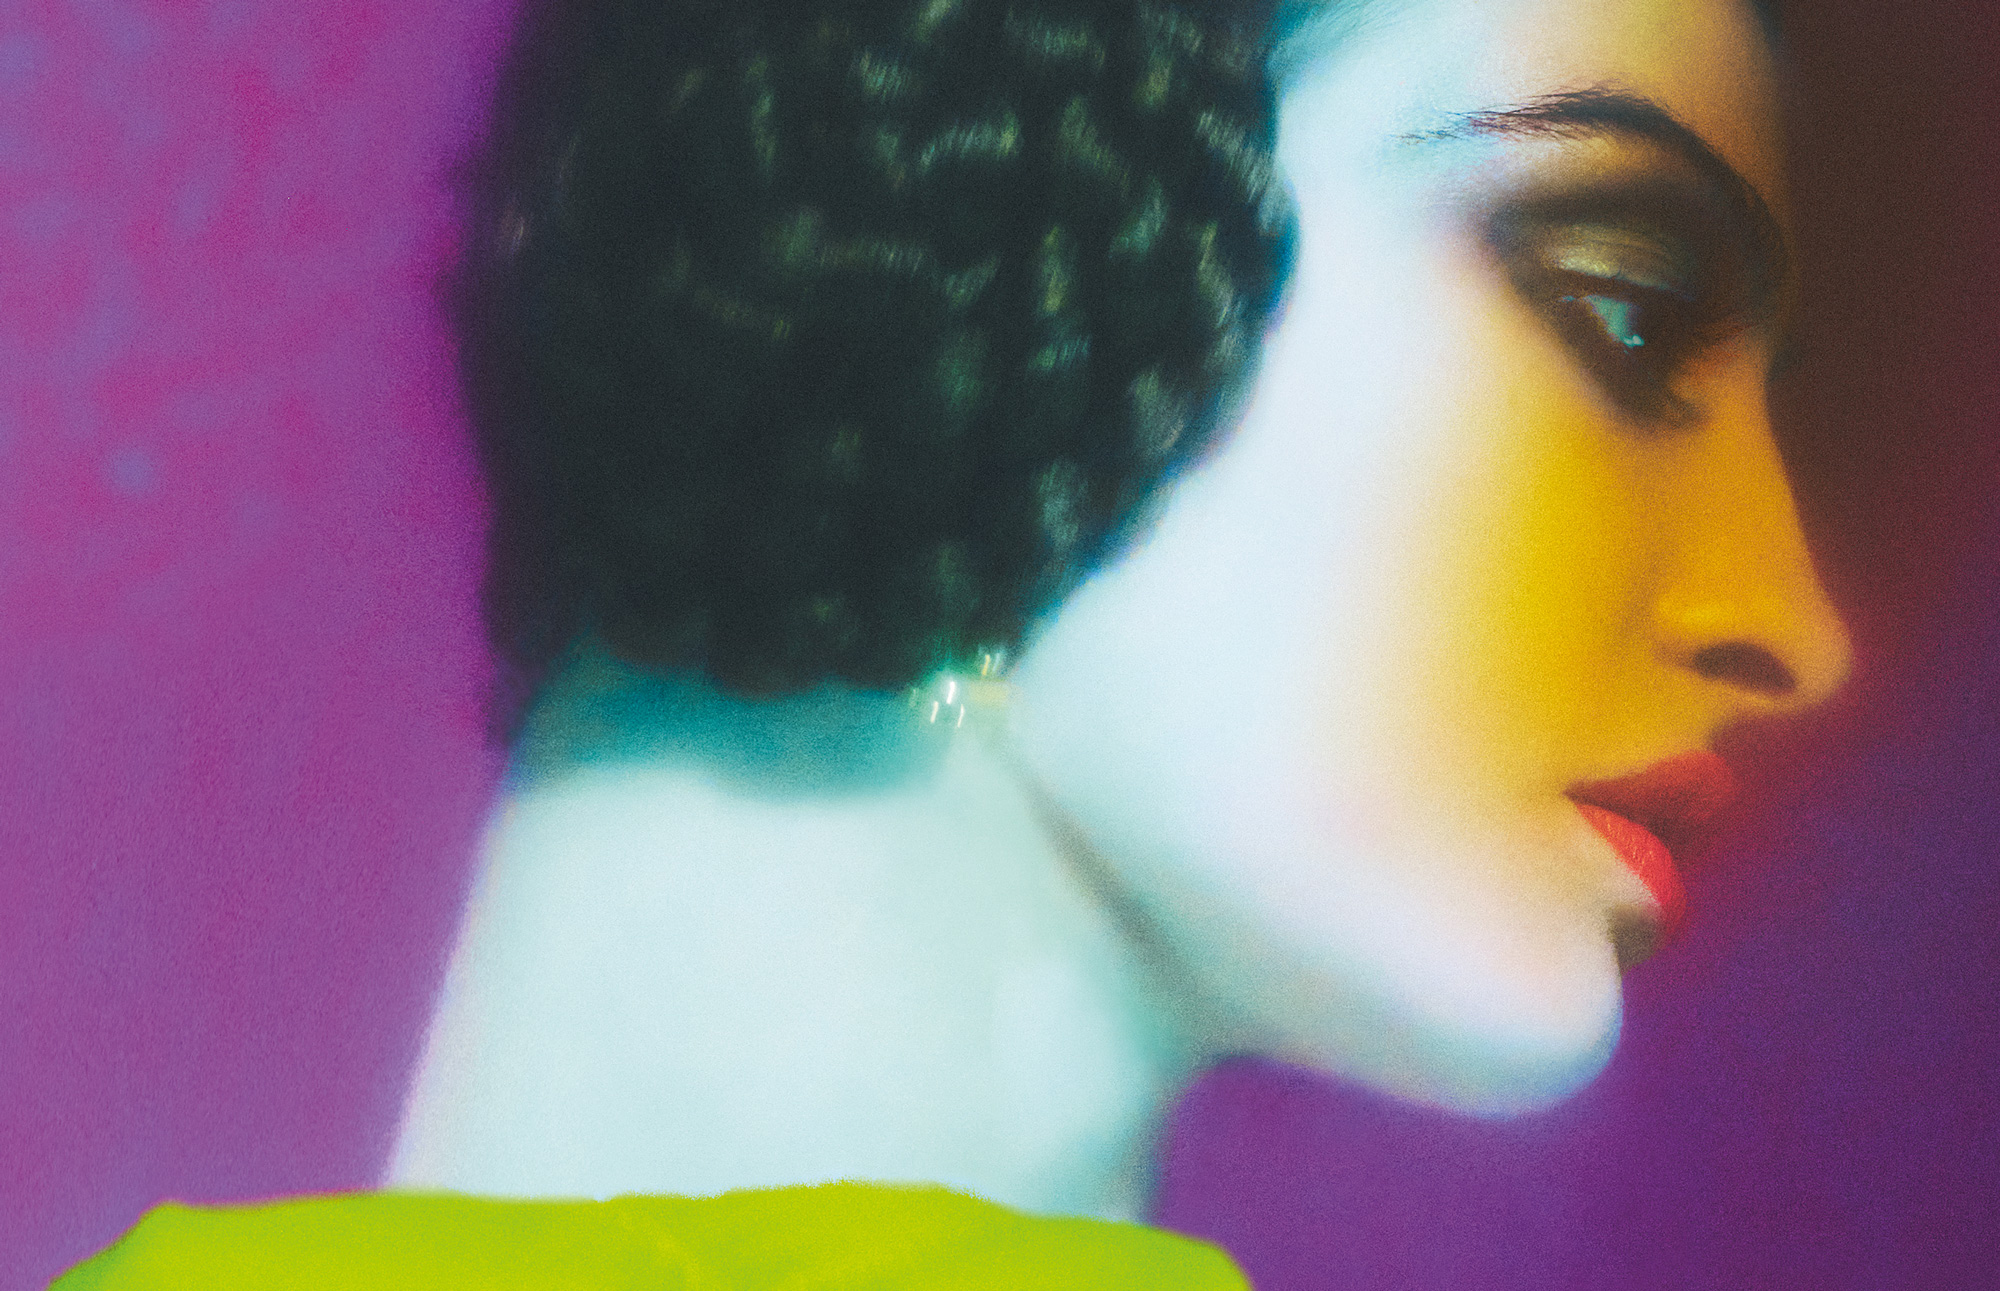 Profil von Frau mit roten Lippen, lila Hintergrund